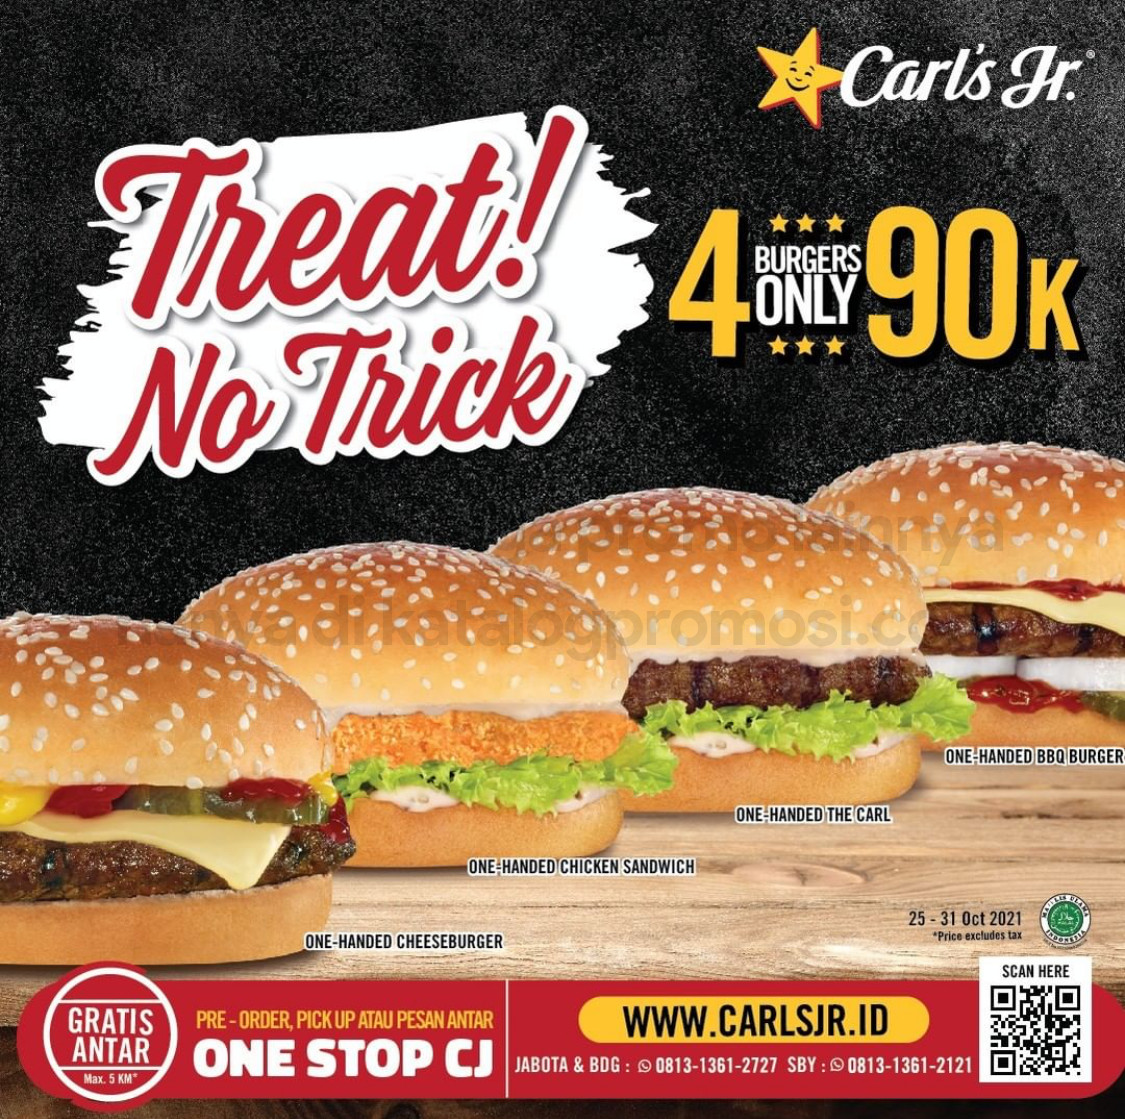 Carls Jr Promo 4 For 90K - Paket 4 Burger Hanya Rp 90.000,-